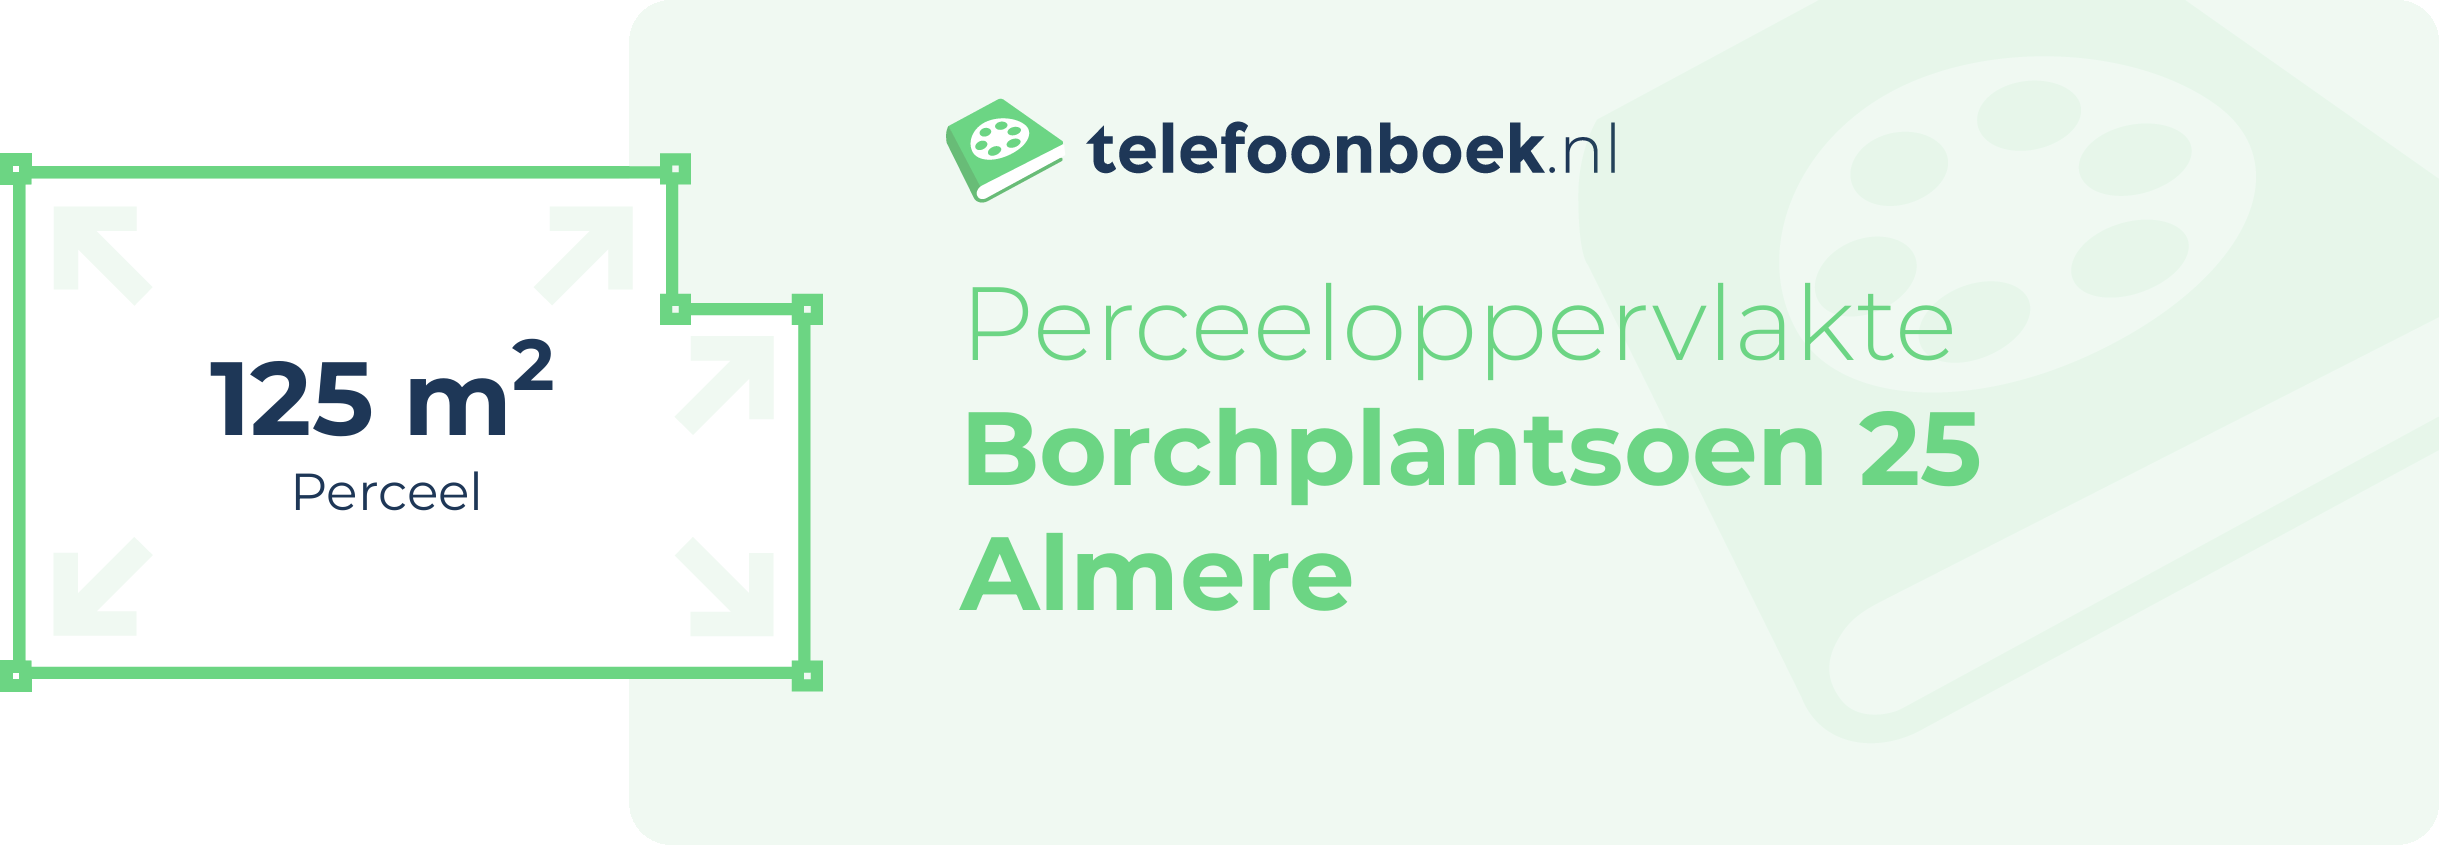 Perceeloppervlakte Borchplantsoen 25 Almere